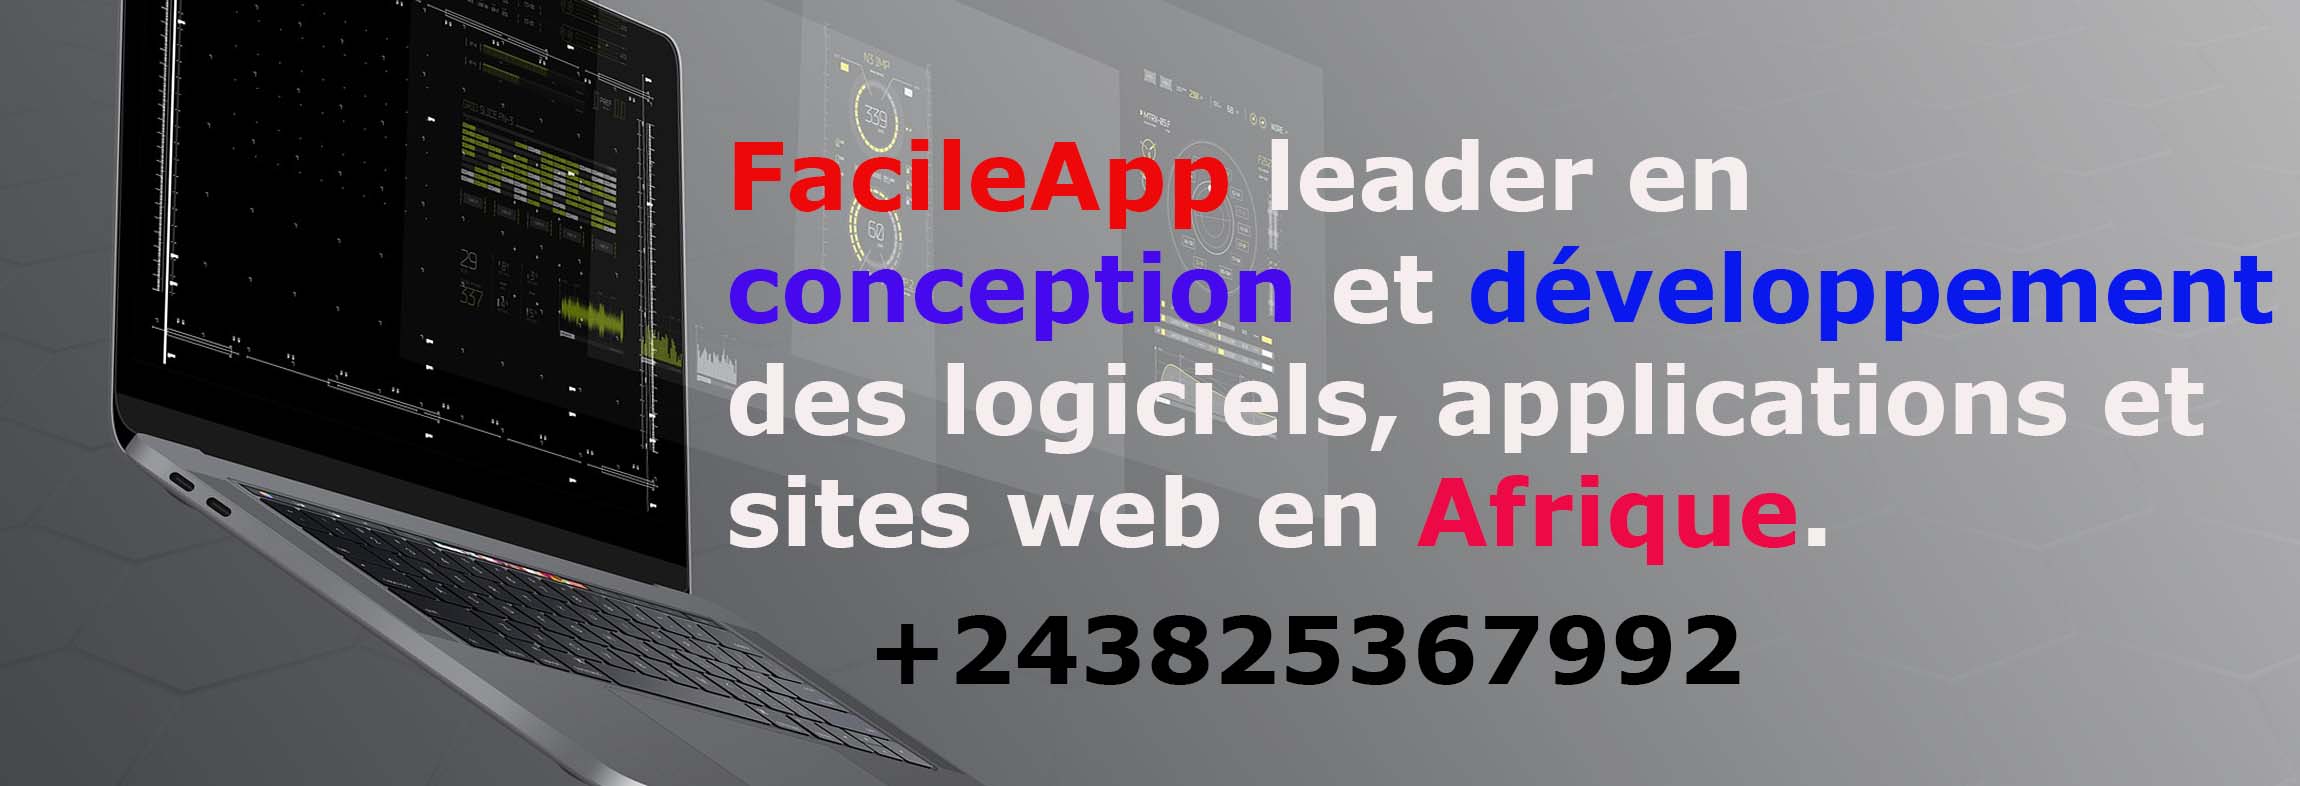 FacileApp agence ou Entreprise de conception et développement des logiciels, sites web et applications mobiles